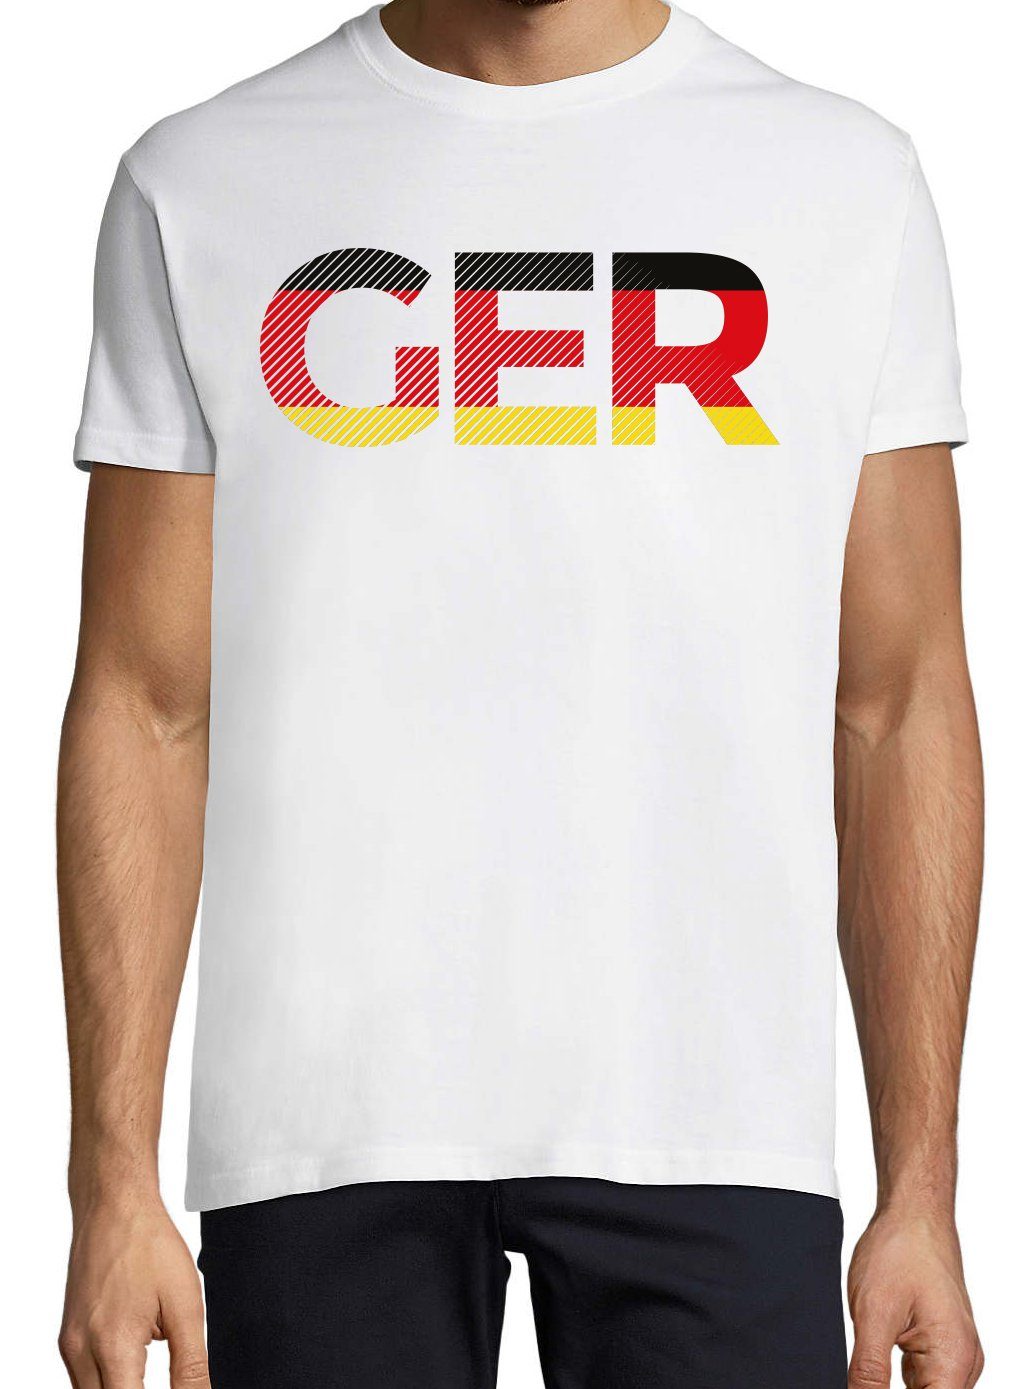 GER Germany Designz im Fußball Youth Frontprint mit Herren Look T-Shirt Weiss T-Shirt